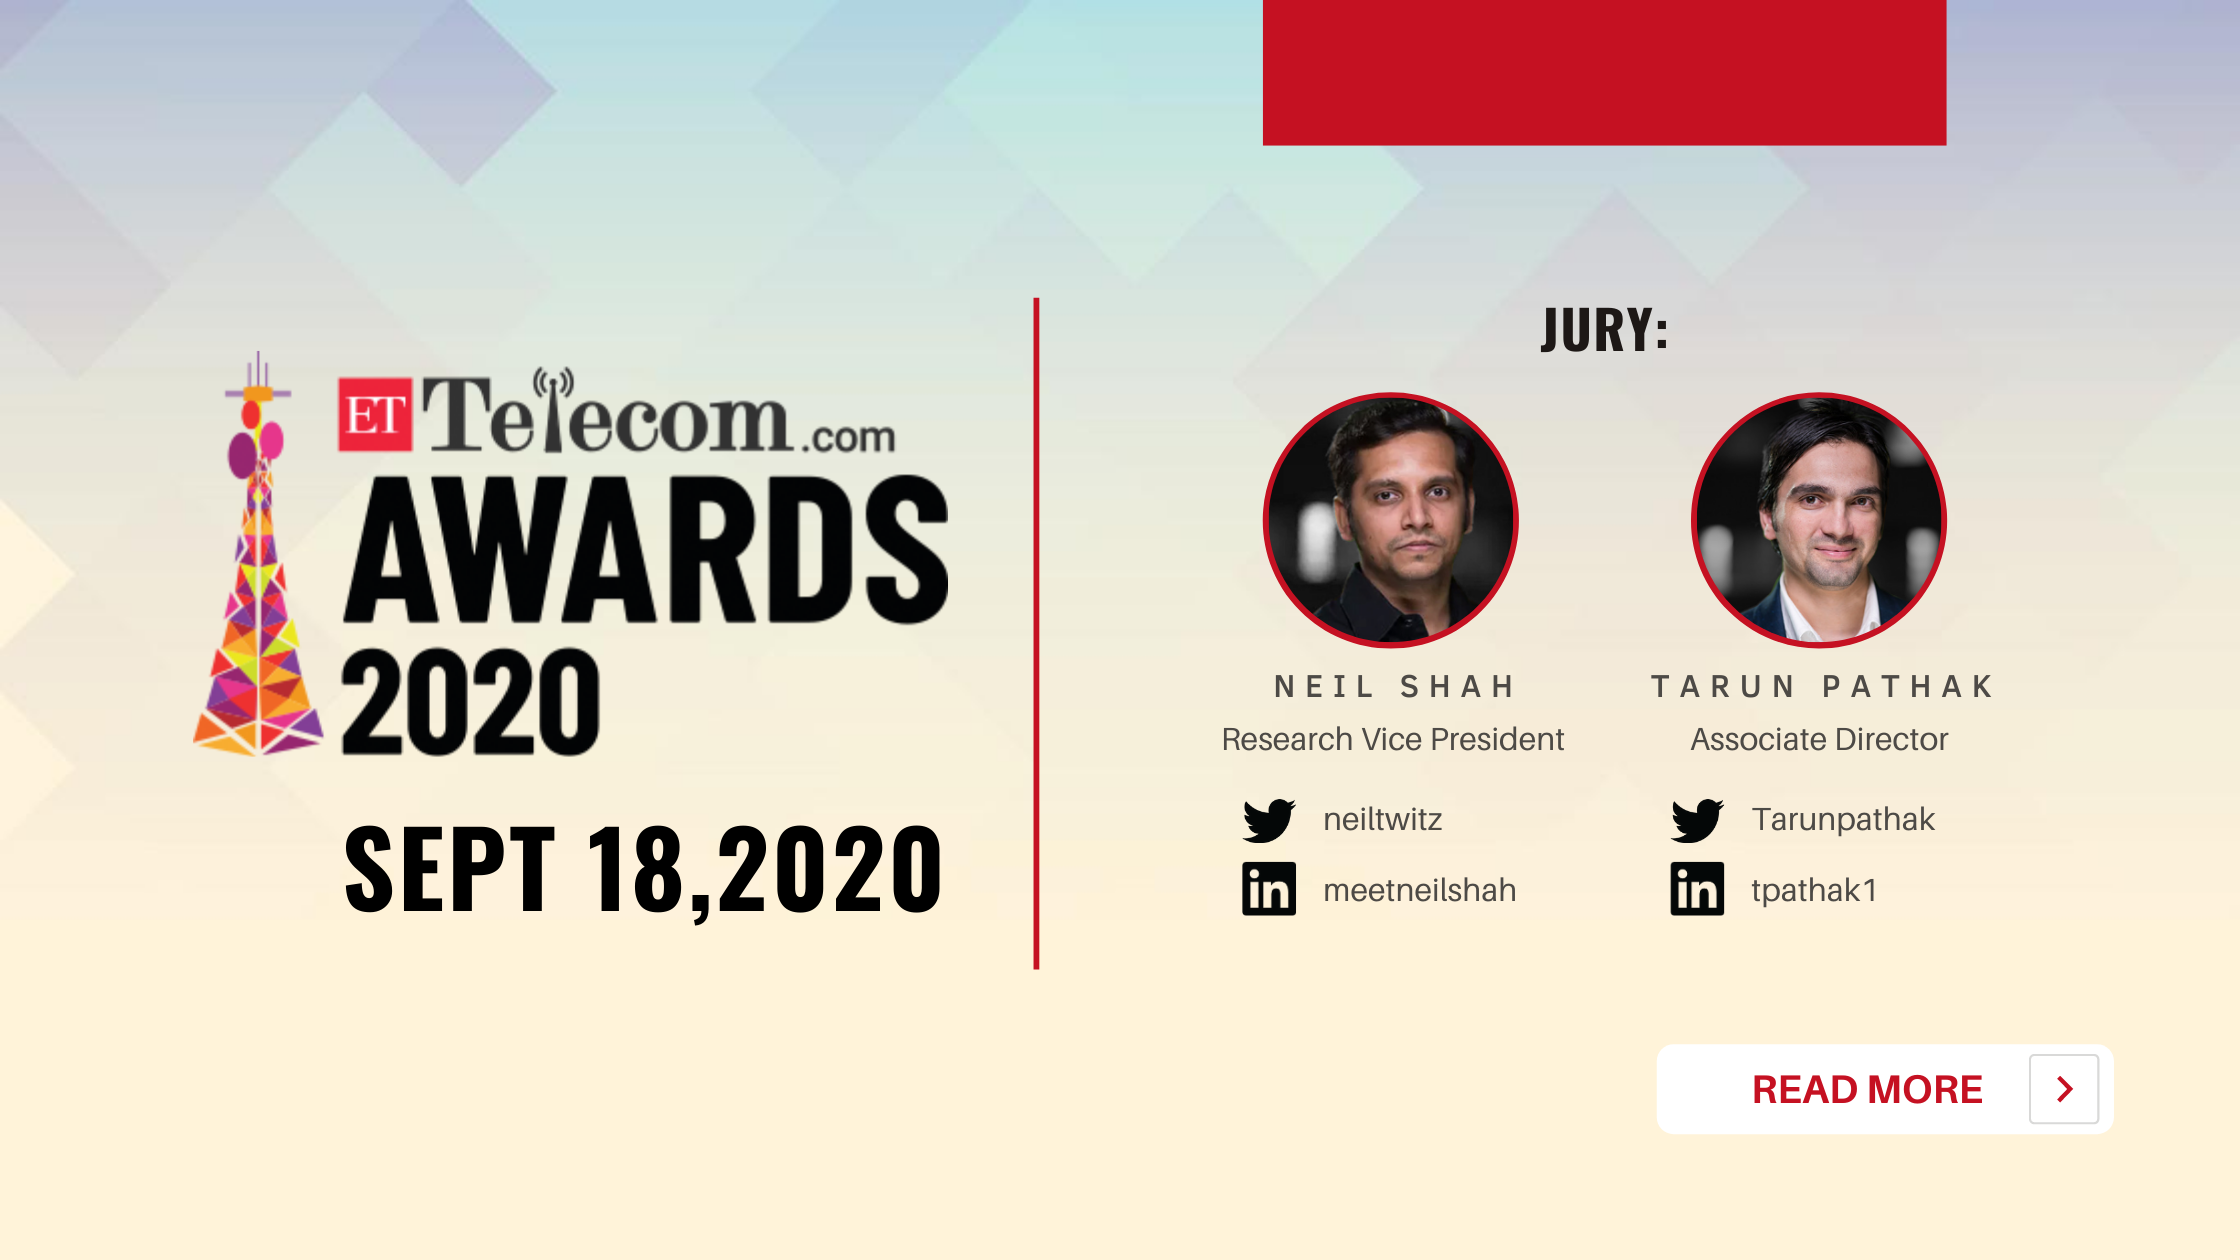 ET Telecom Awards 2020